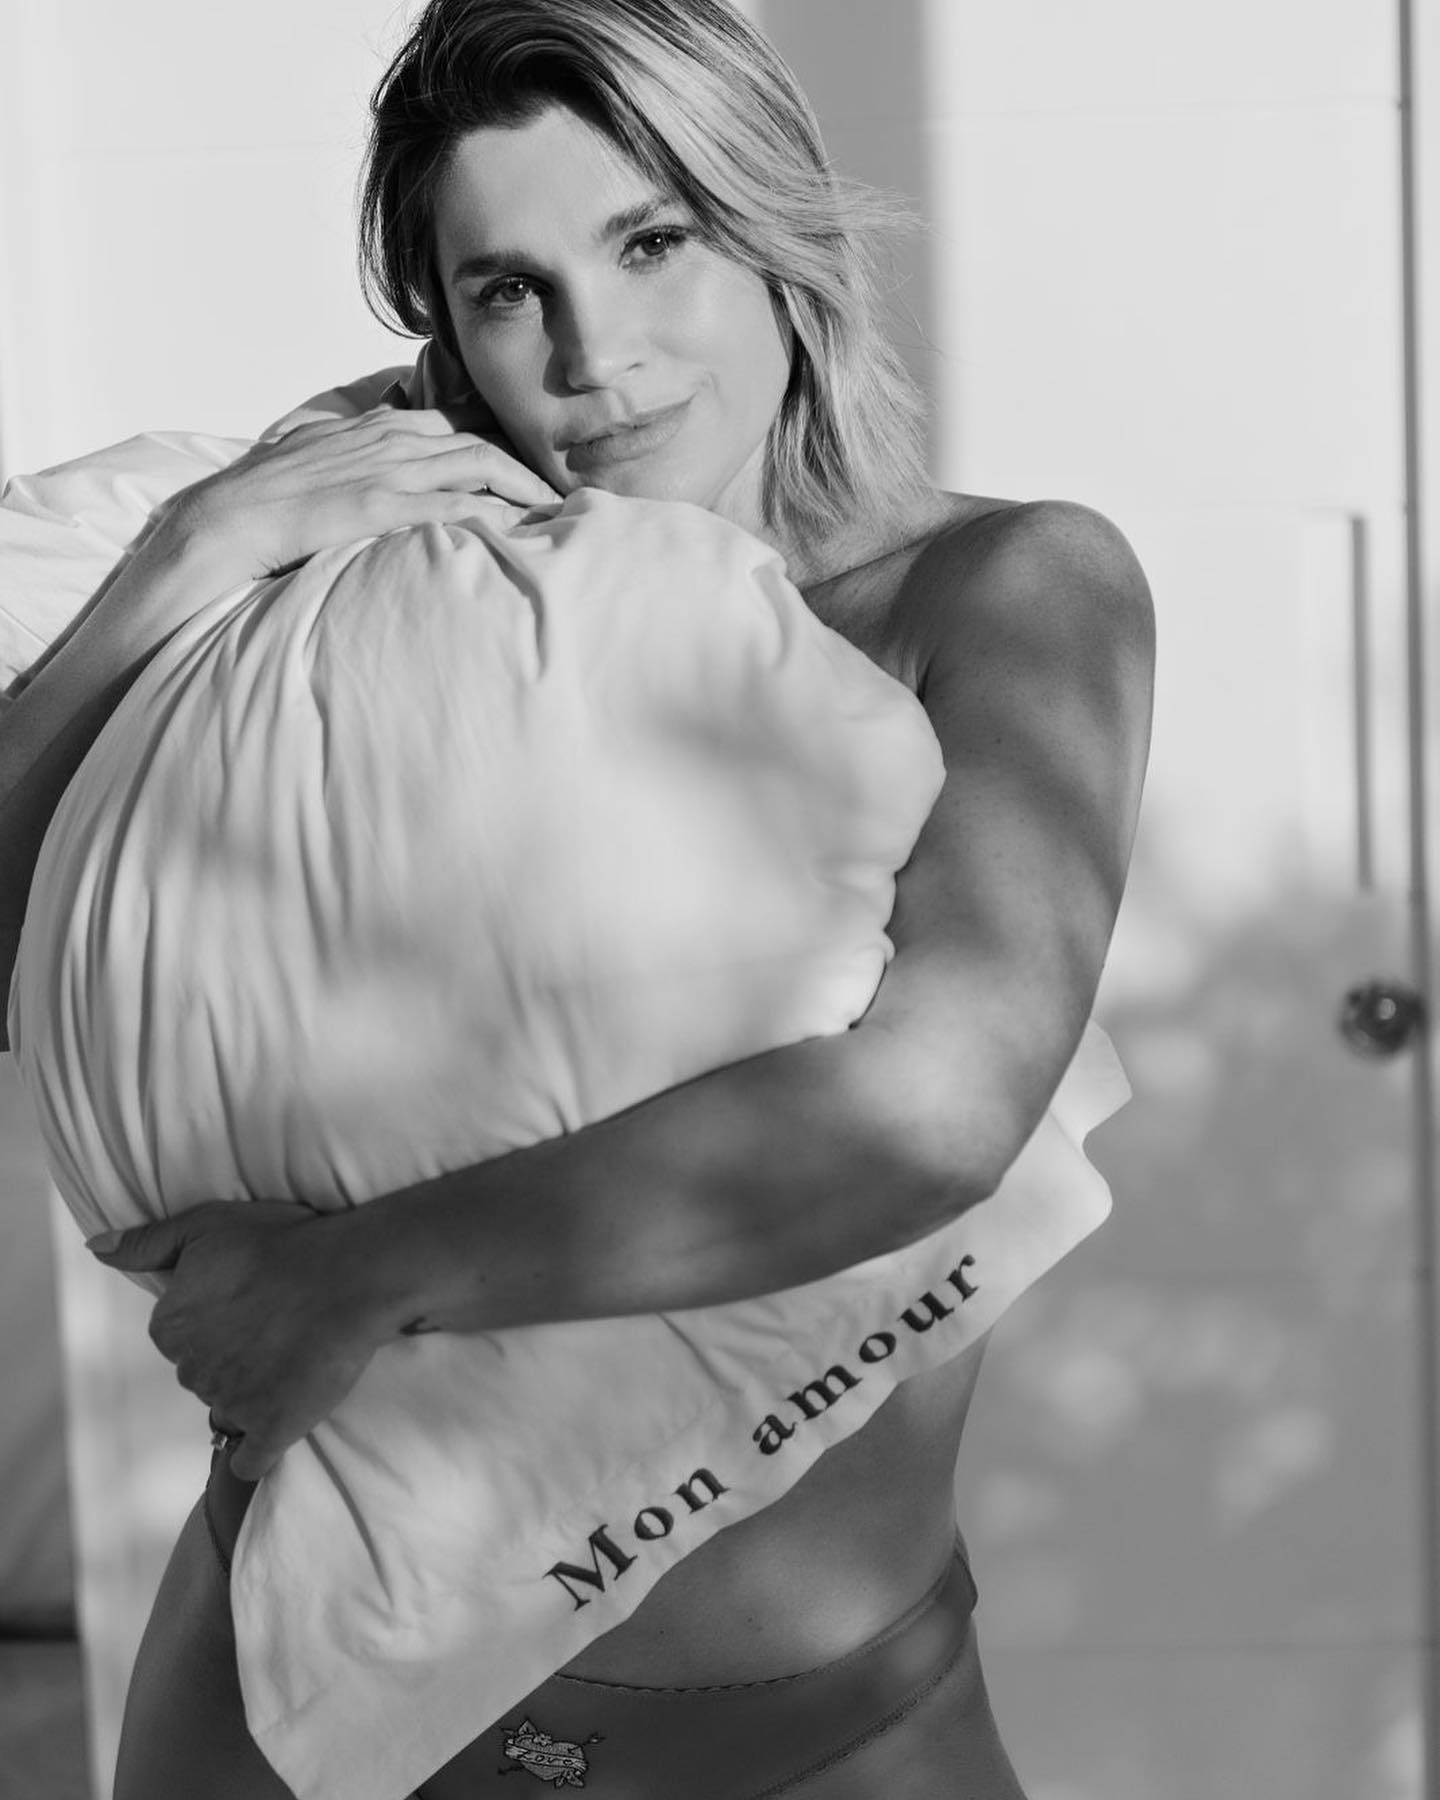 Flávia Alessandra posou sensual de lingerie para se despedir de casa antes de se mudar - Foto: Reprodução/ @flaviaalessandra